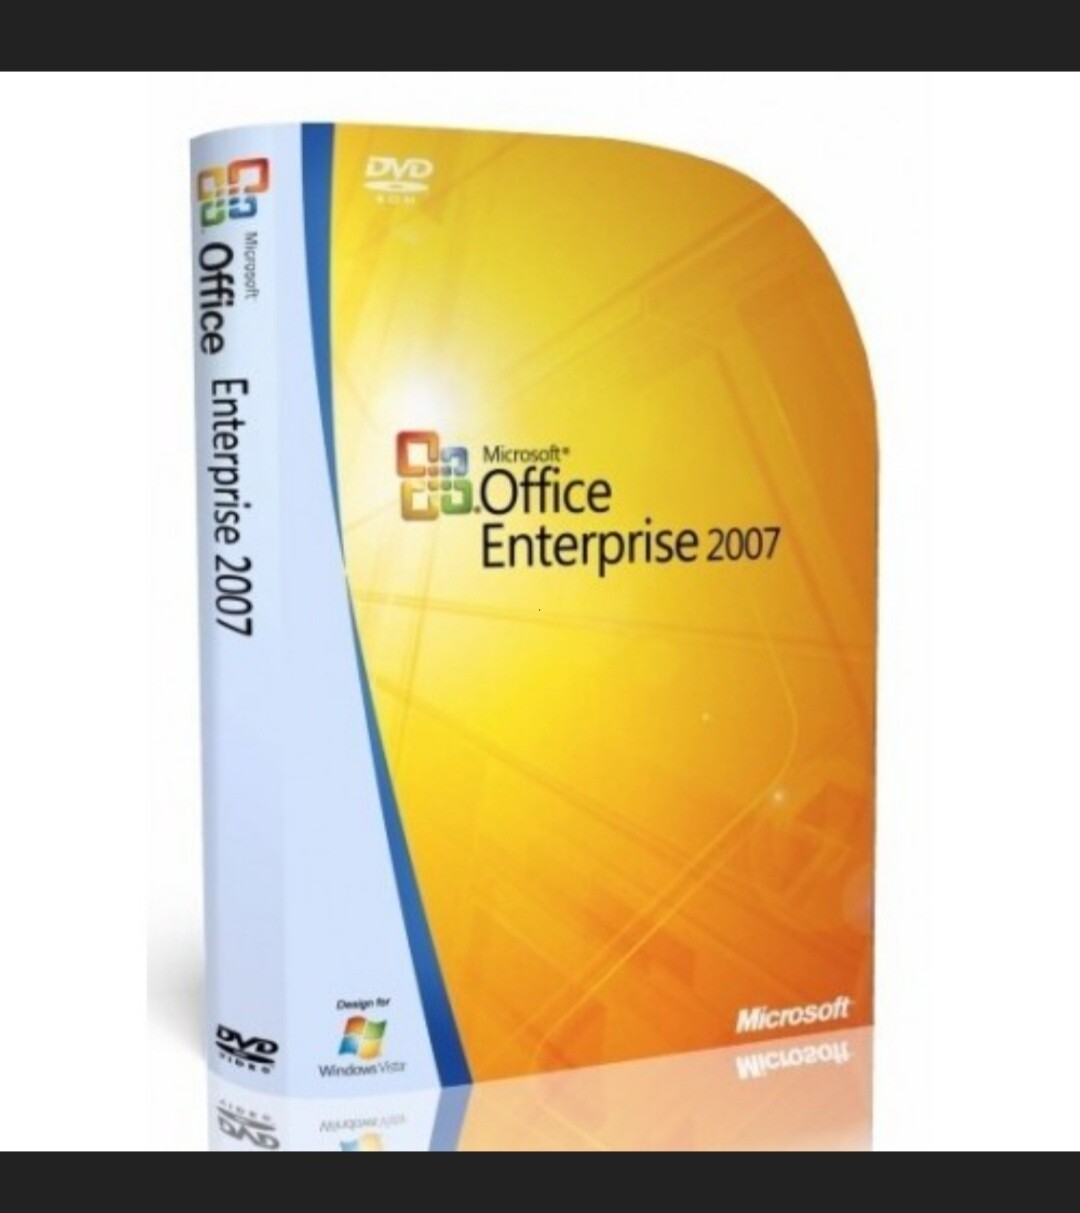 Microsoft Office 2007 Enterprise Full Version